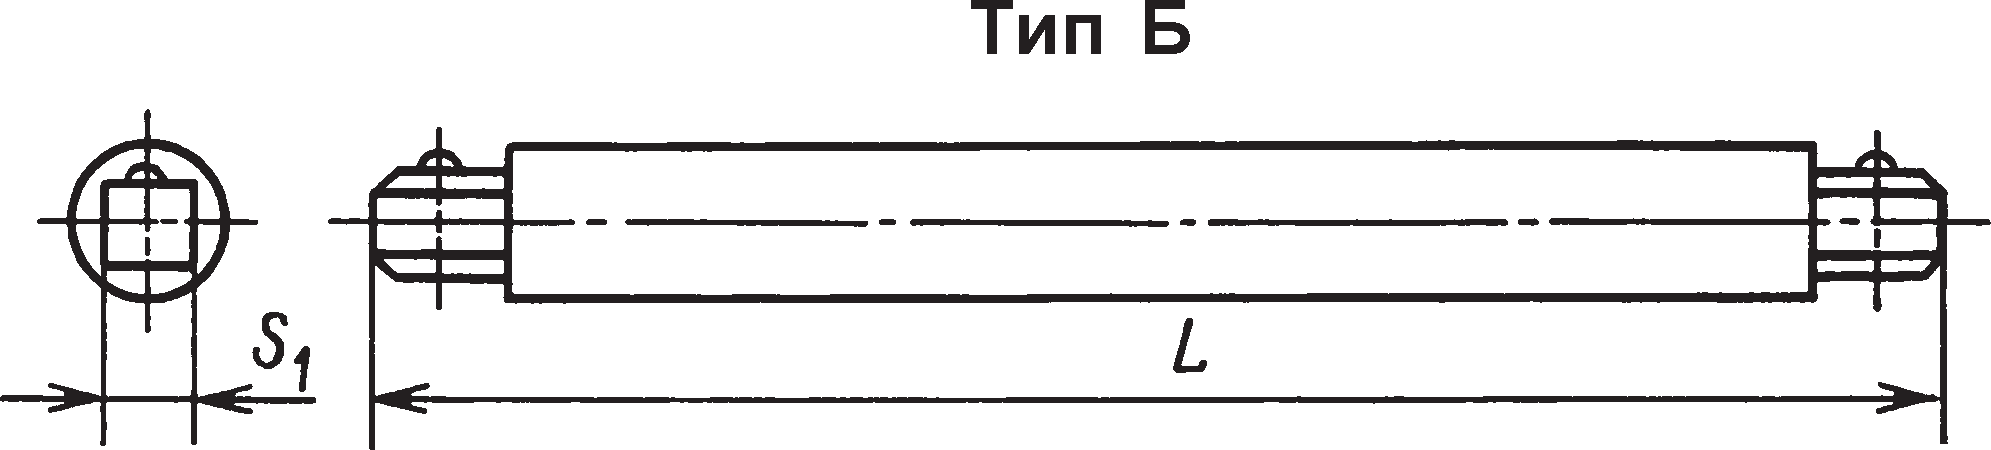 Удлинители (ГОСТ 25600–83) Тип Б